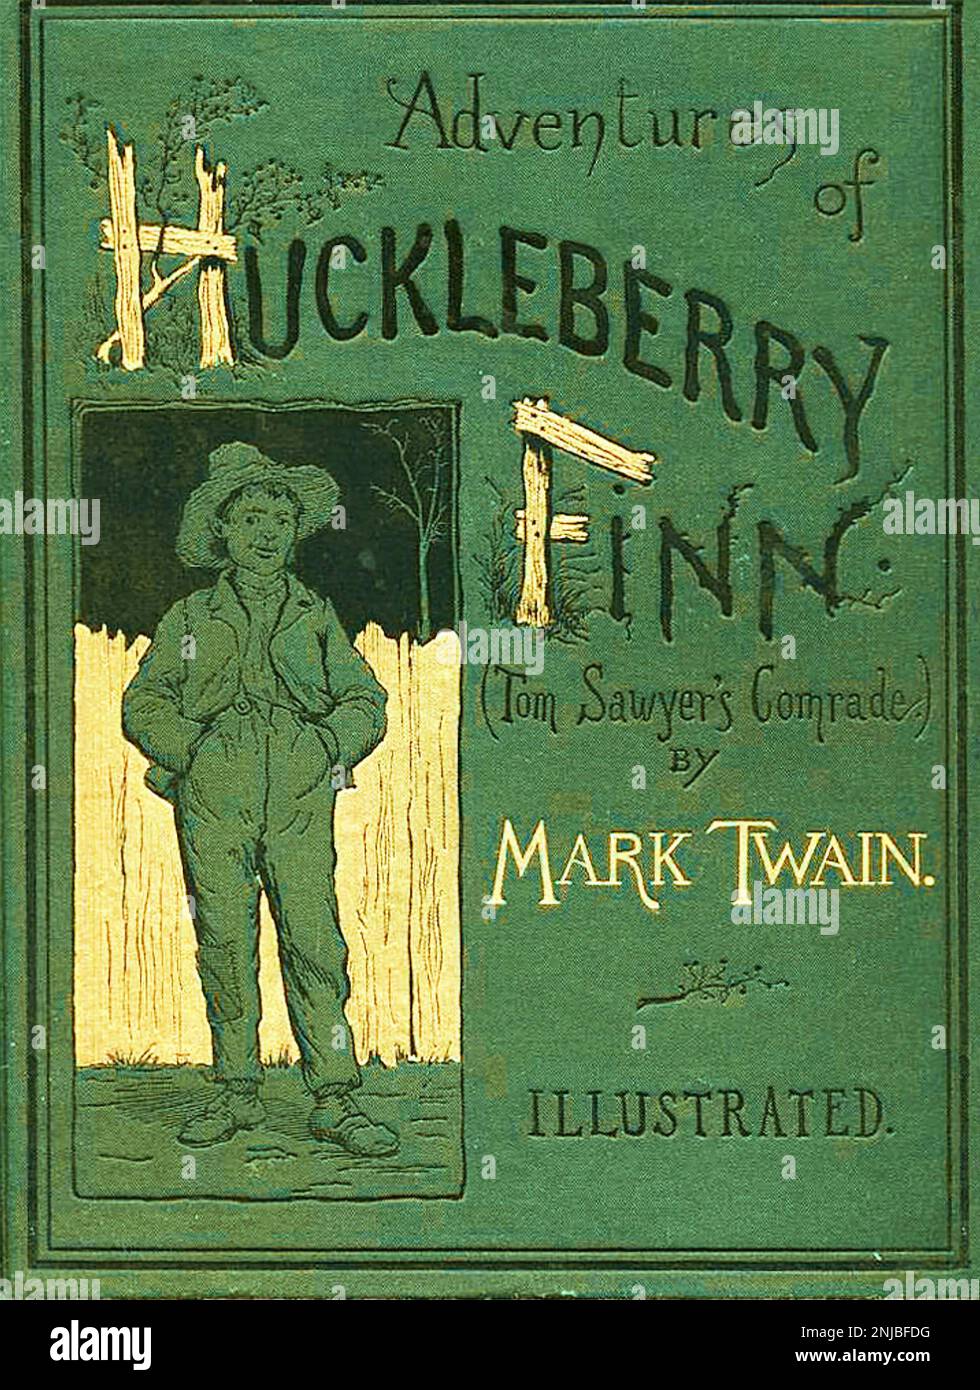 AVENTURES DE HUCKLEBERRY FINN par Mark Twain. Couverture de la couverture originale du livre US 1885 Banque D'Images